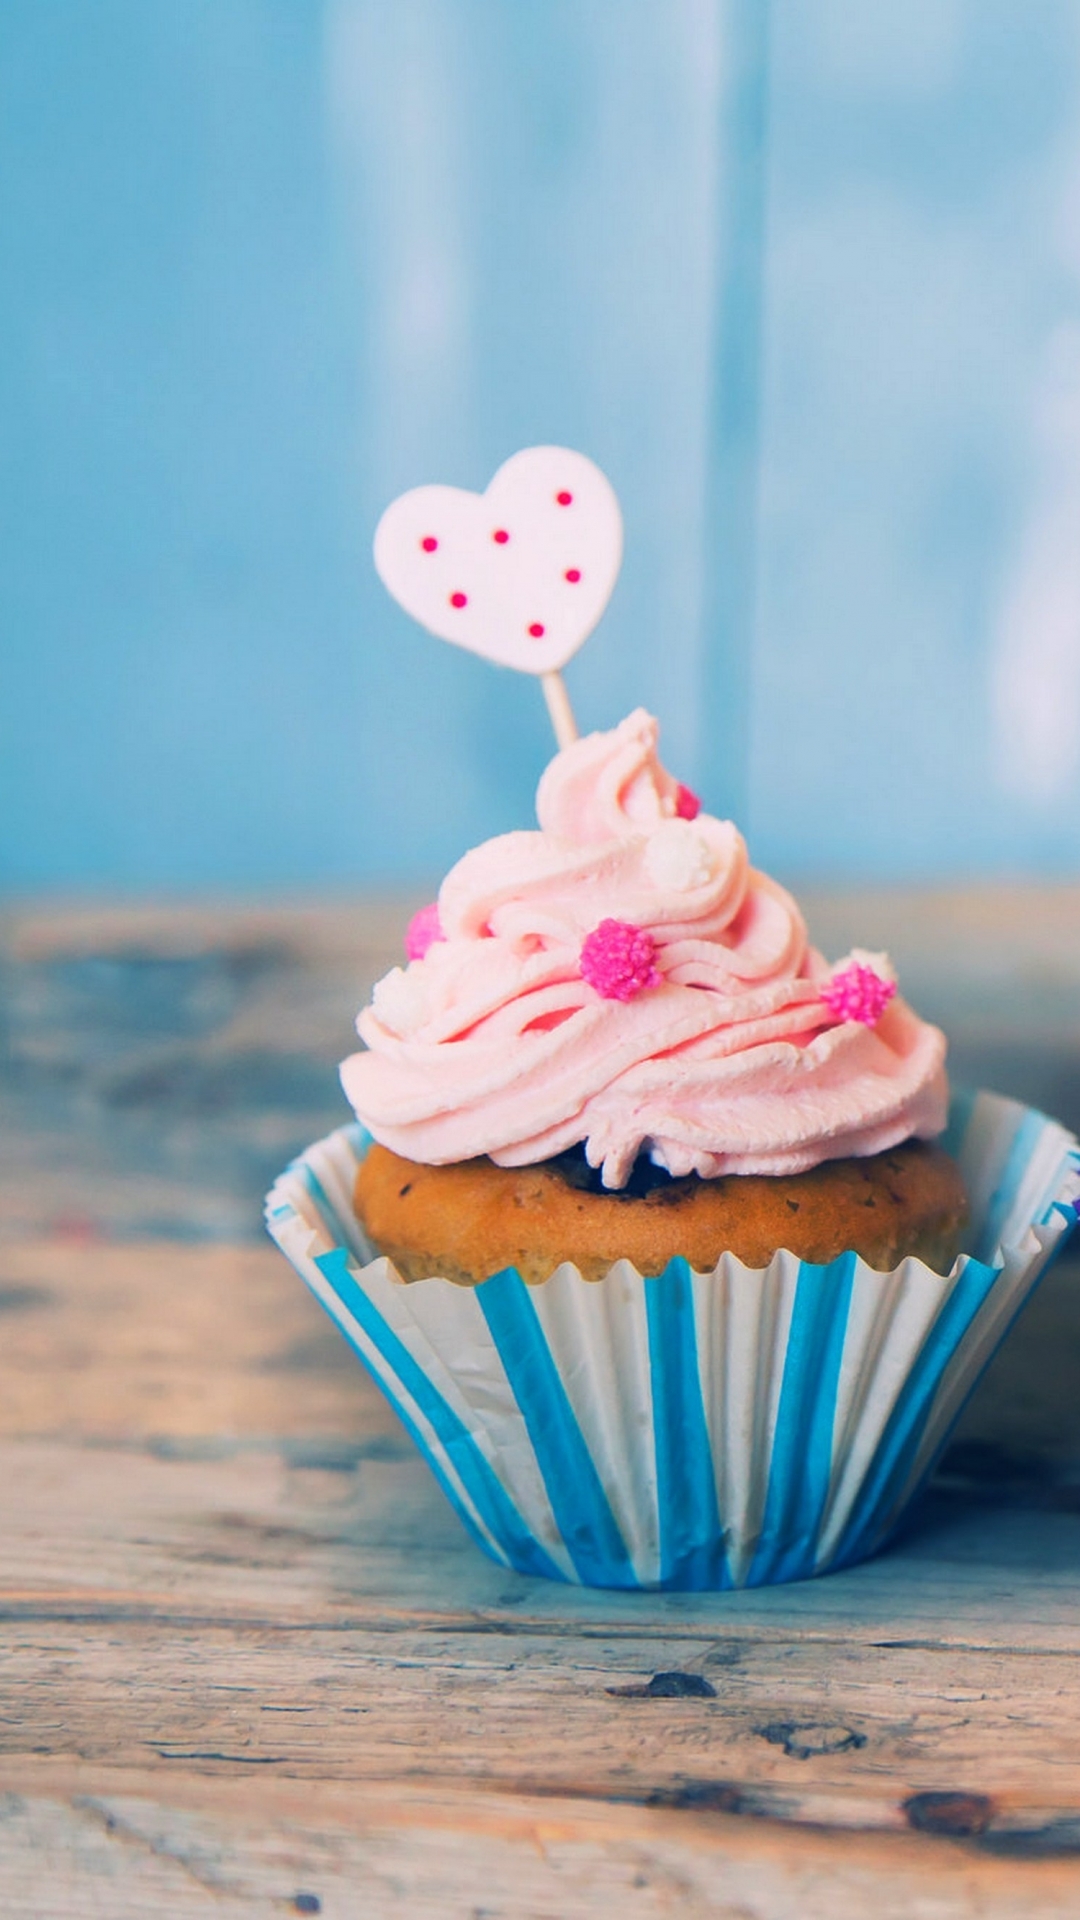 かわいいカップケーキ壁紙,カップケーキ,バタークリーム,ピンク,アイシング,食物